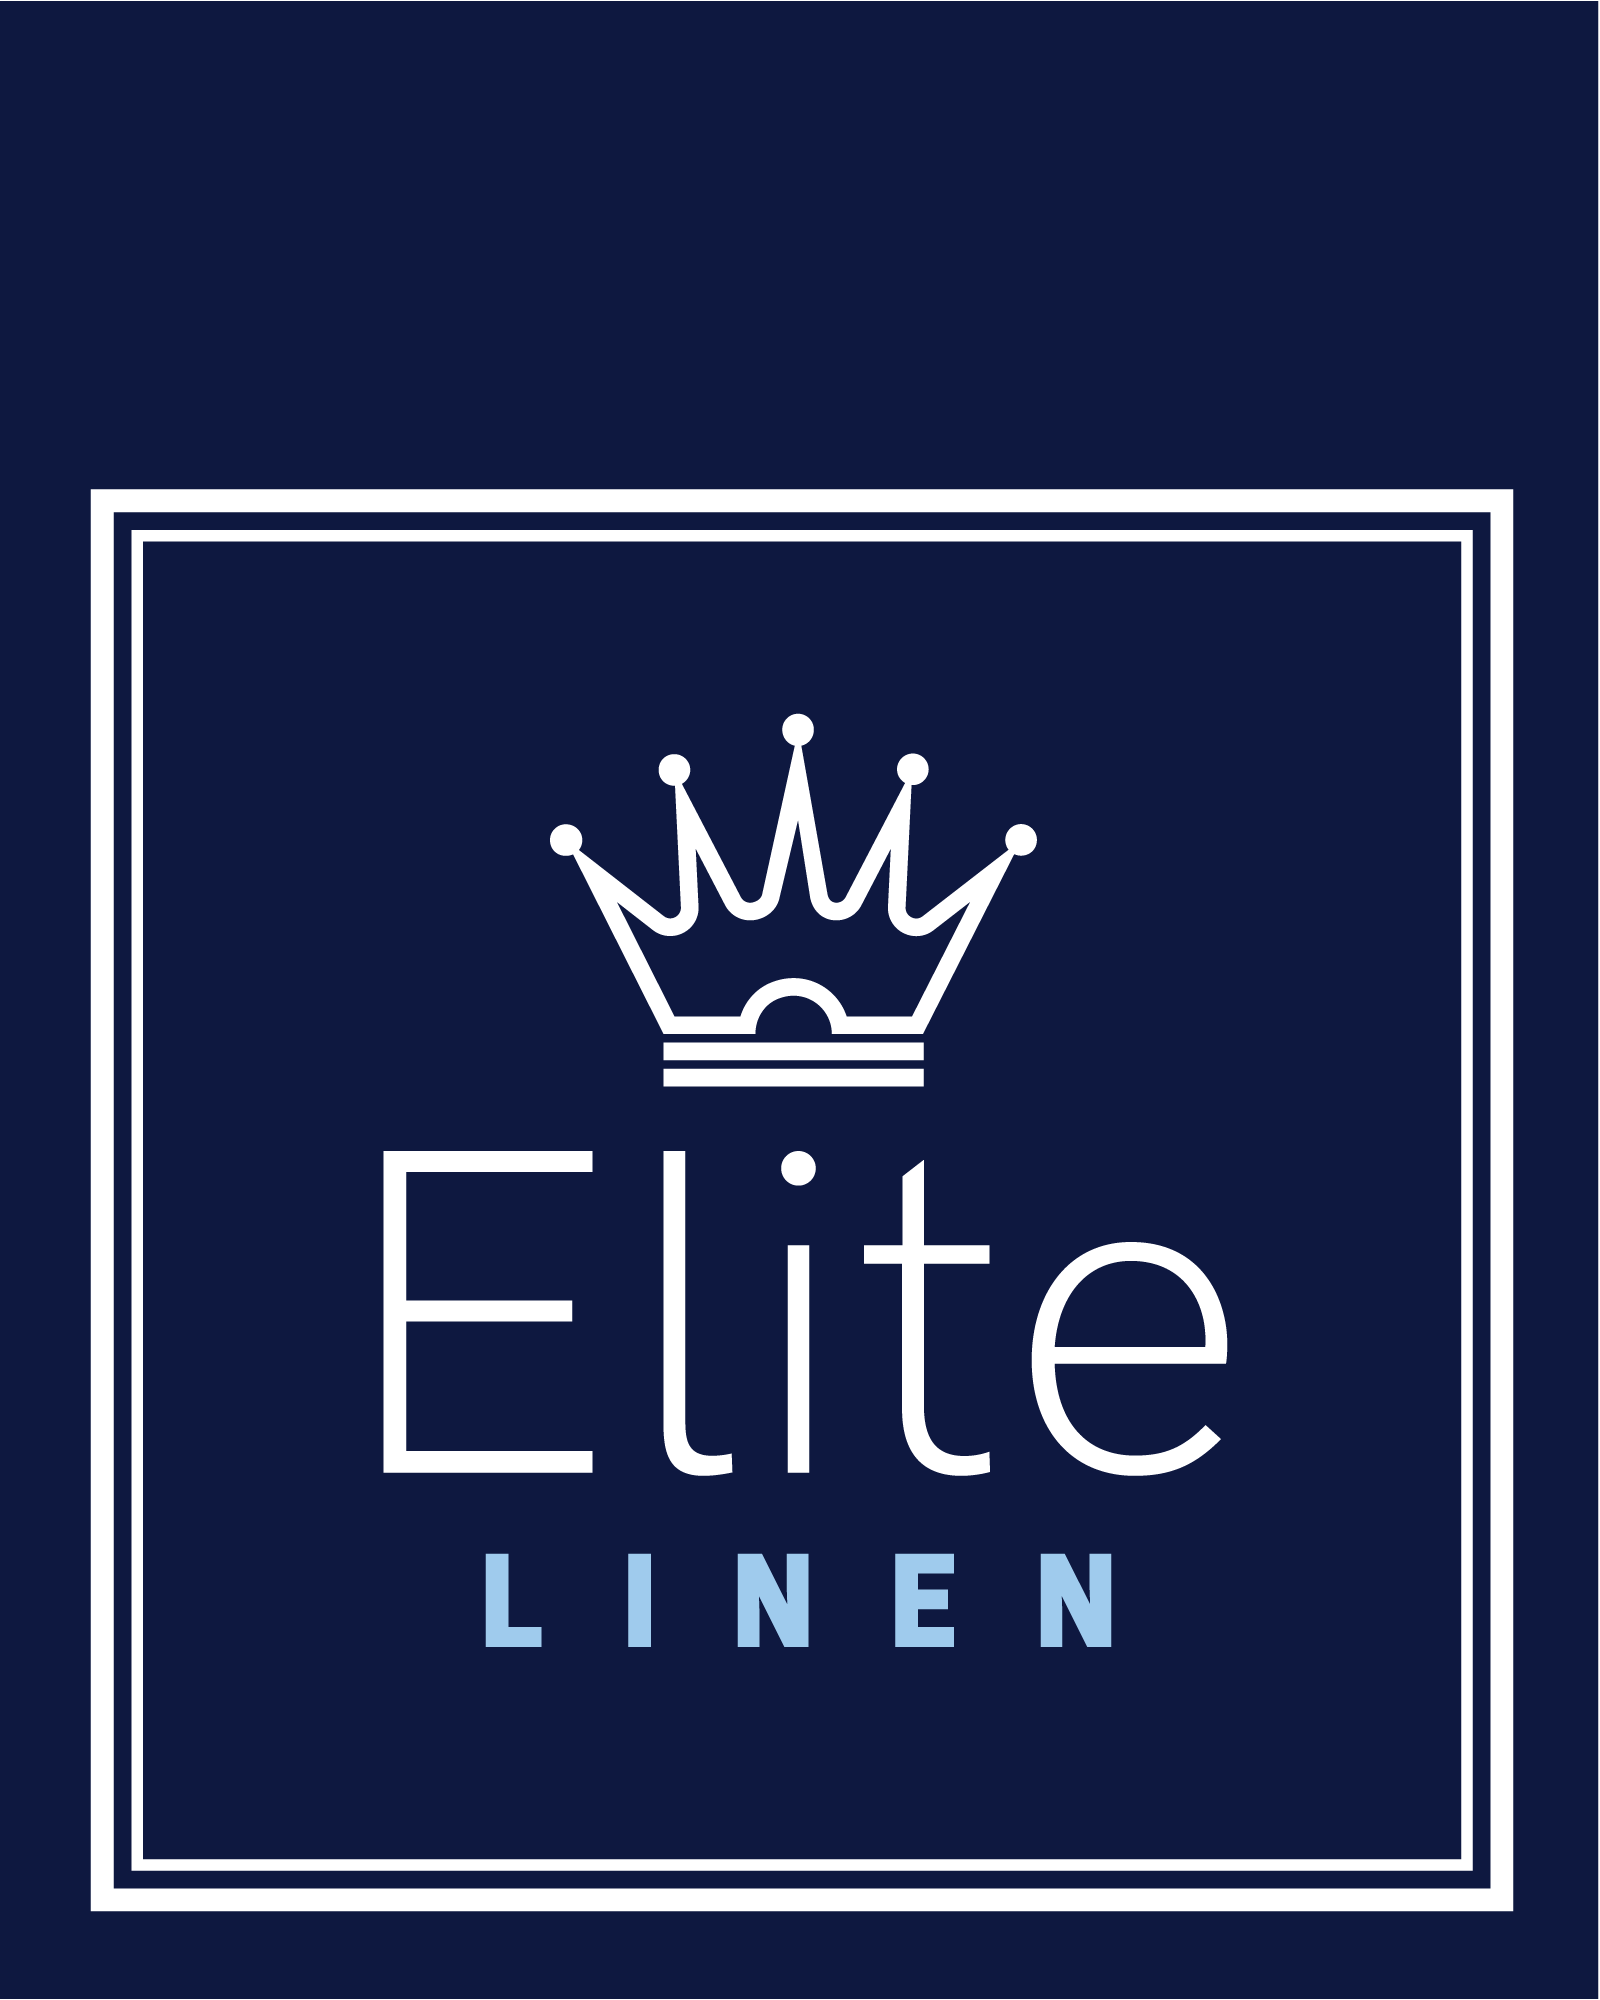 Elite-Linen-logo-tag@2x